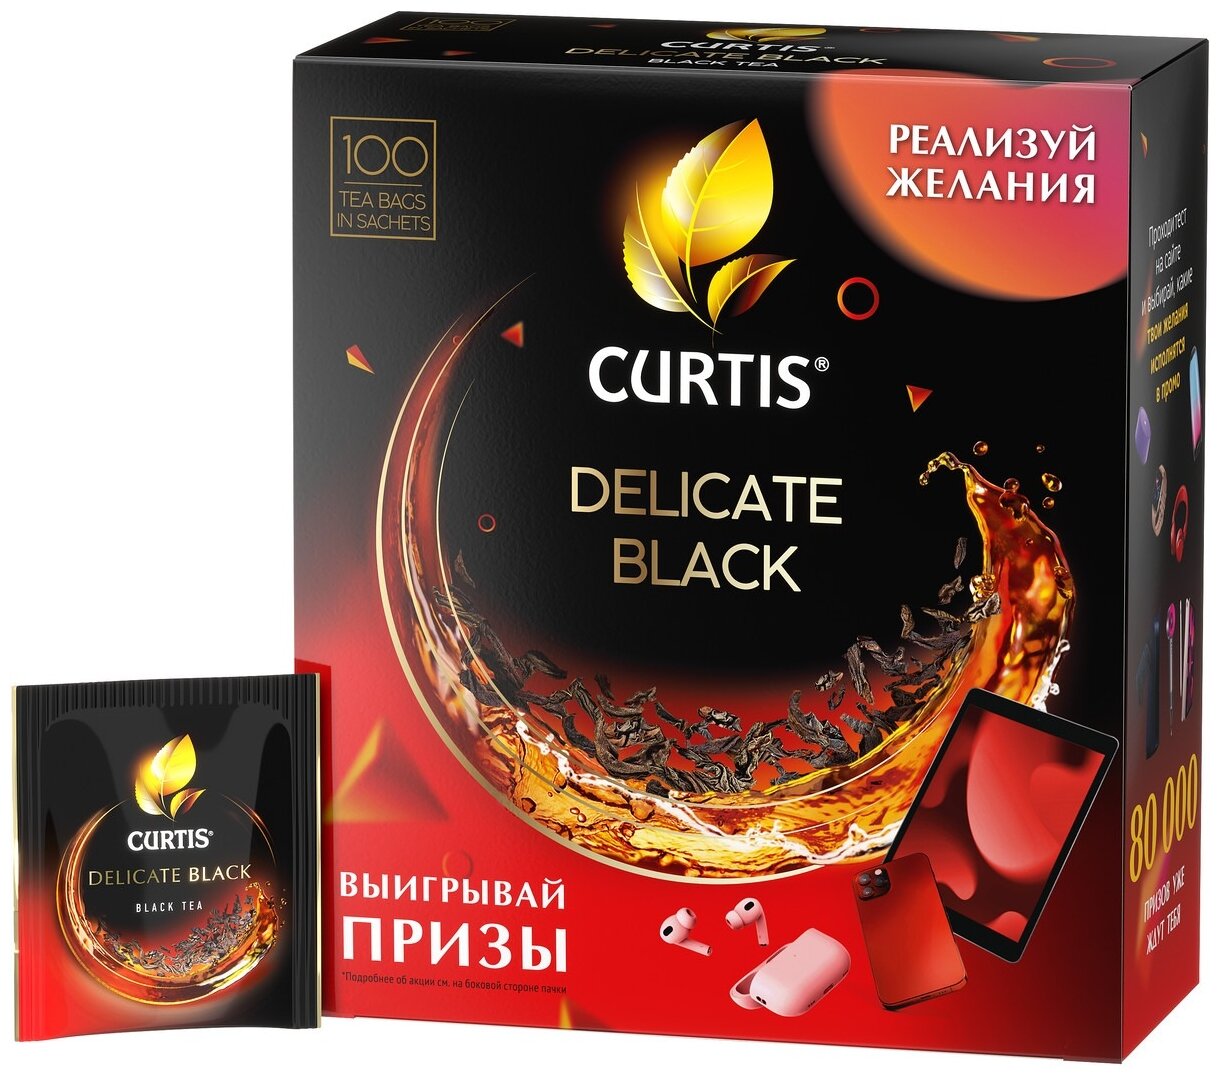 Чай черный Curtis Delicate Black, в пакетиках, 1,7 г × 100 шт.